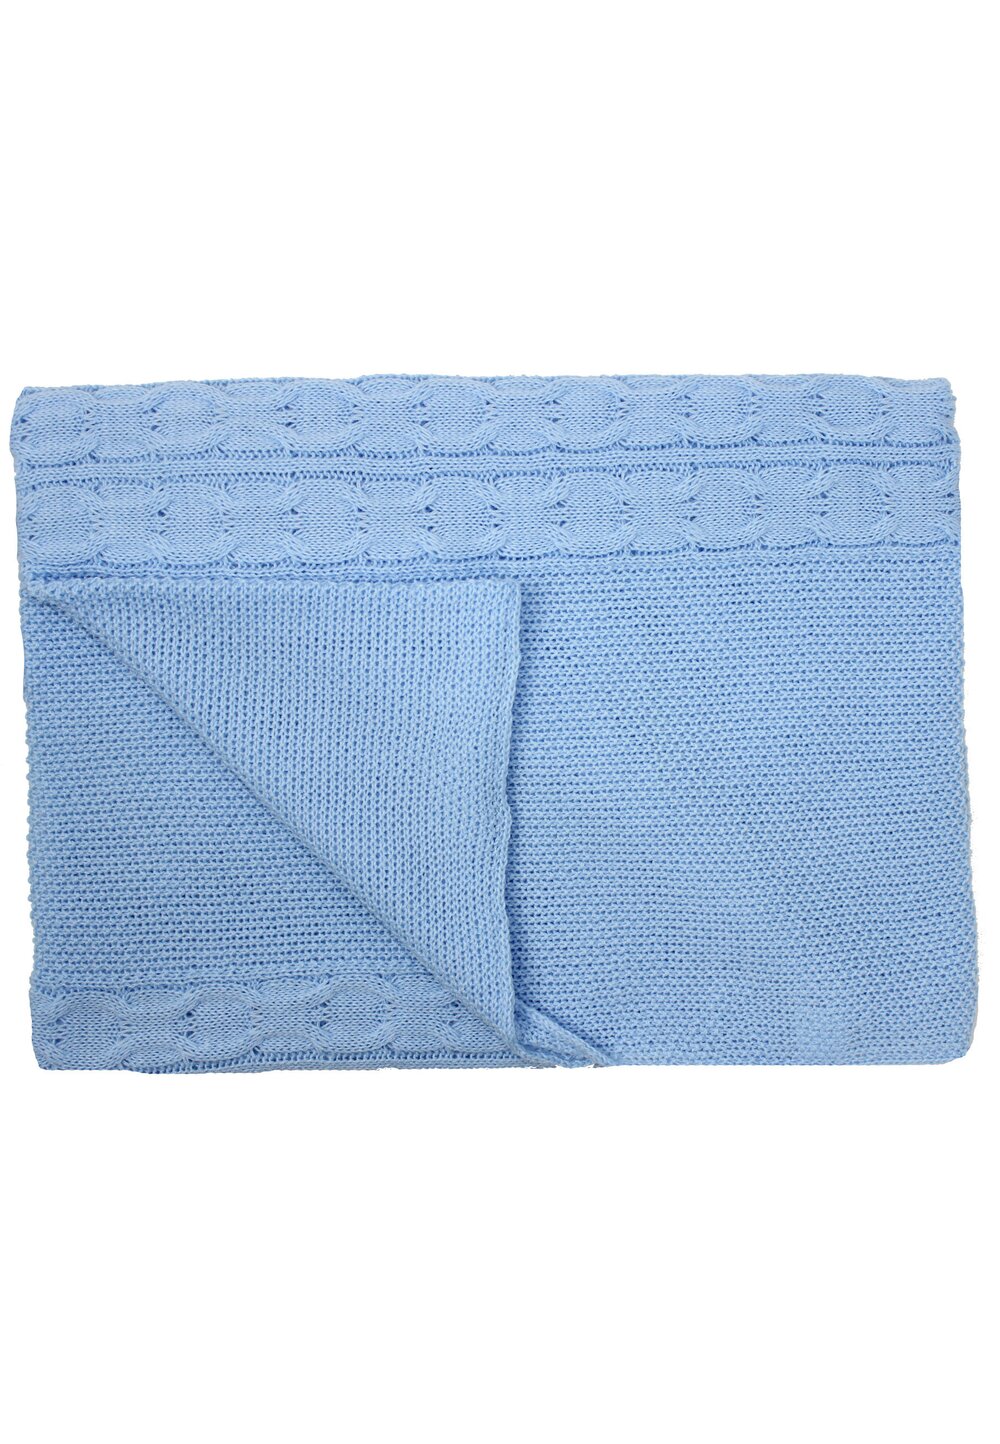 Paturica tricotata, Eva, albastra, 90x90cm Prichindel imagine noua